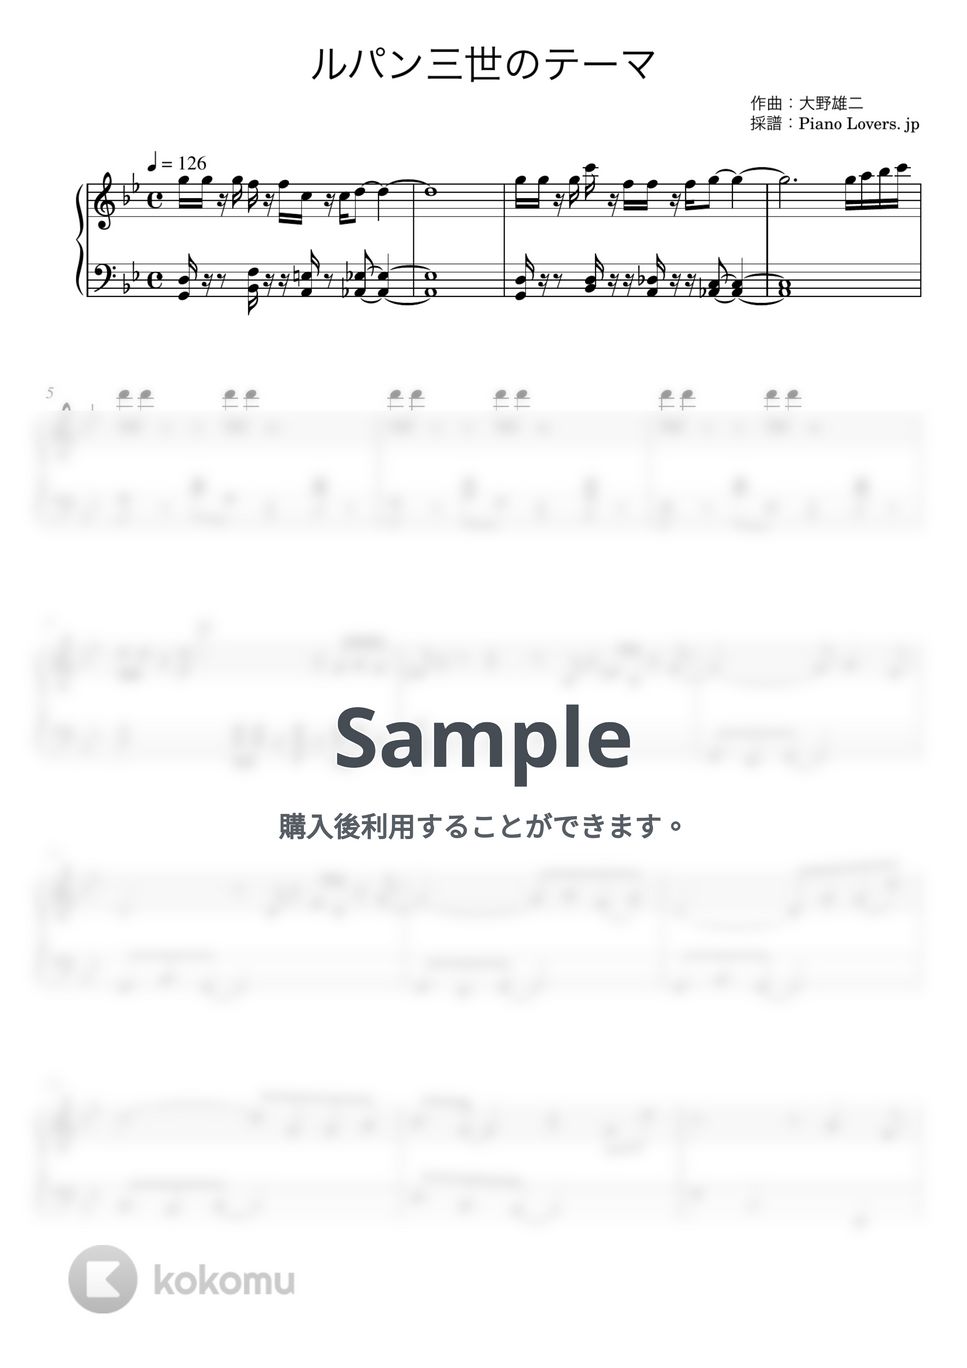 大野雄二 - ルパン三世のテーマ (ピアノ初心者向け / short ver.) by Piano Lovers. jp